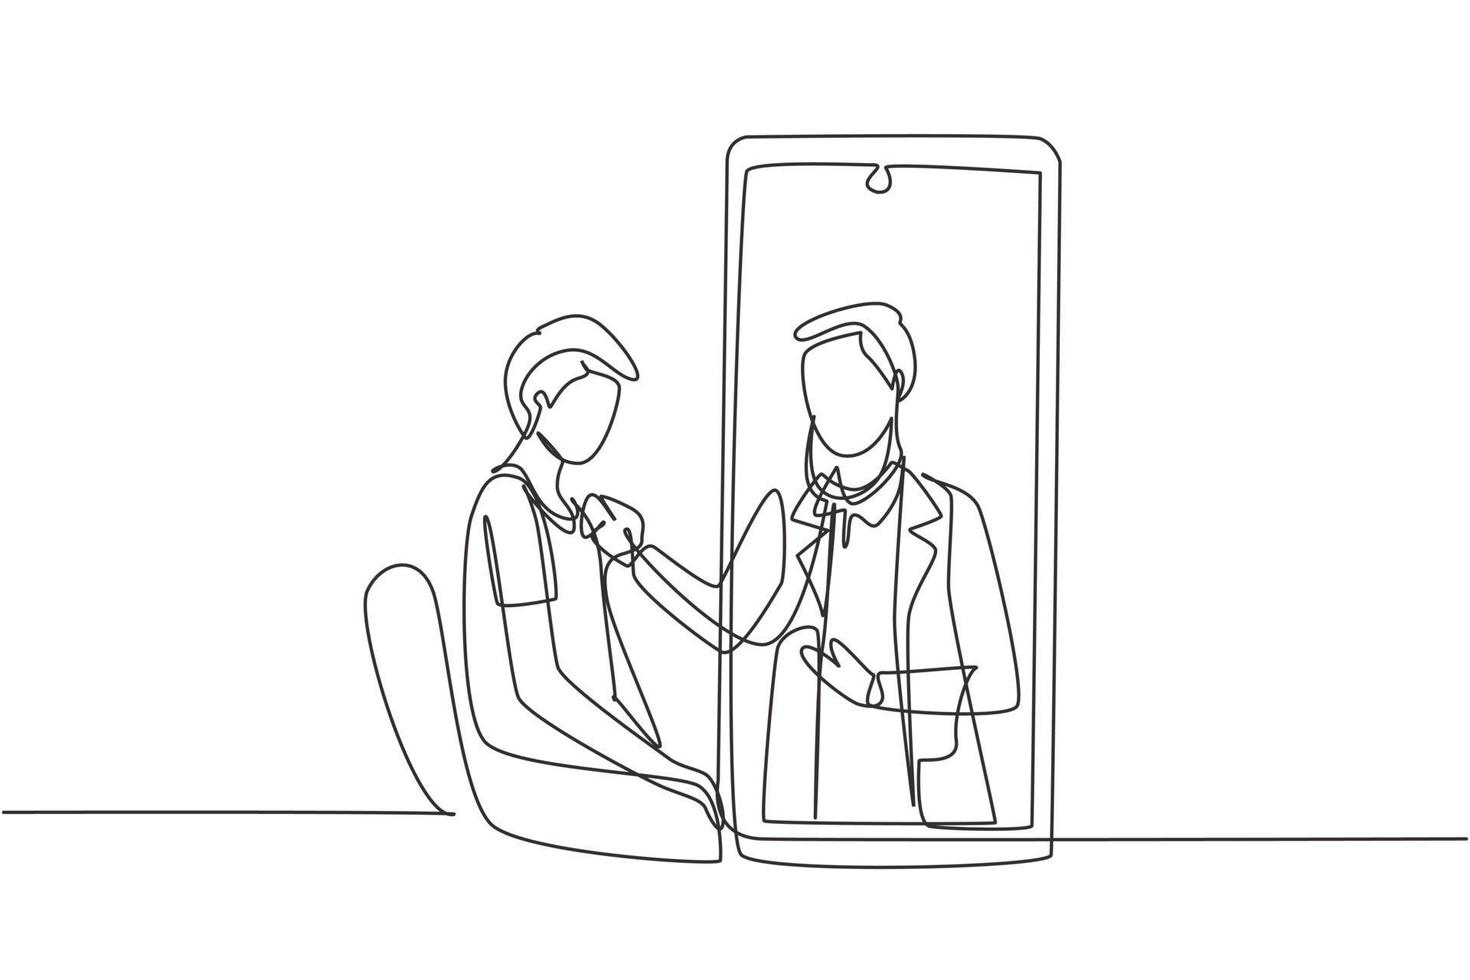 enda kontinuerlig linjeritning manlig läkare kommer ut från smartphoneskärmen och kontrollerar den manliga patientens hjärtfrekvens med hjälp av ett stetoskop som sitter på stolen. en rad rita grafisk design vektorillustration vektor